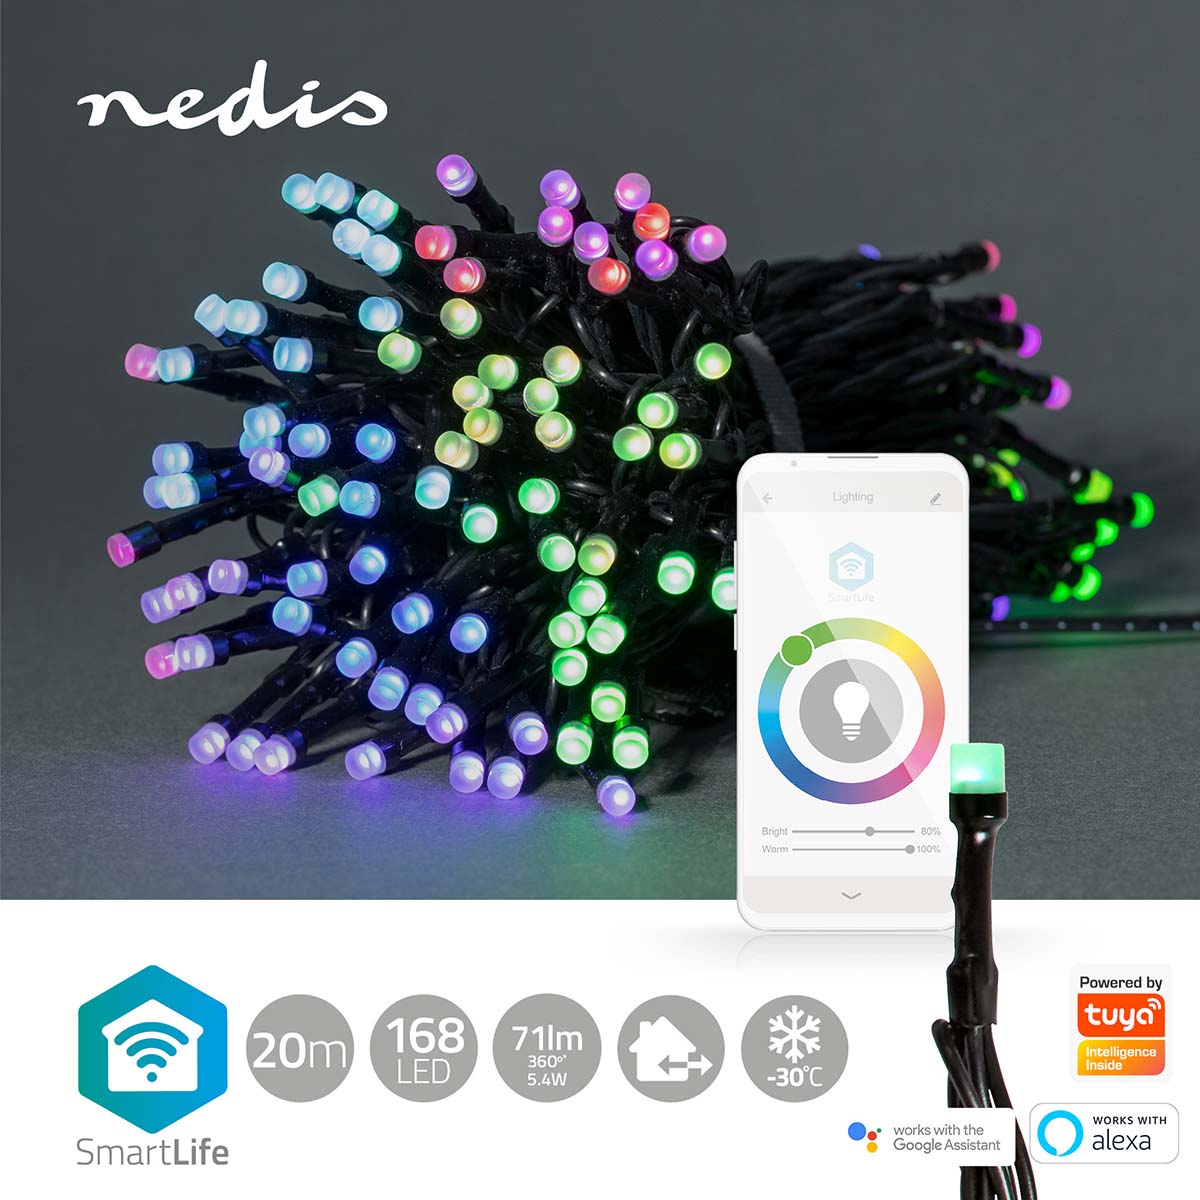 Luzes Nedis Wi-Fi RGB, 168 LEDs em 20m, oferecem iluminação inteligente para um Natal vibrante, controlável via Wi-Fi.